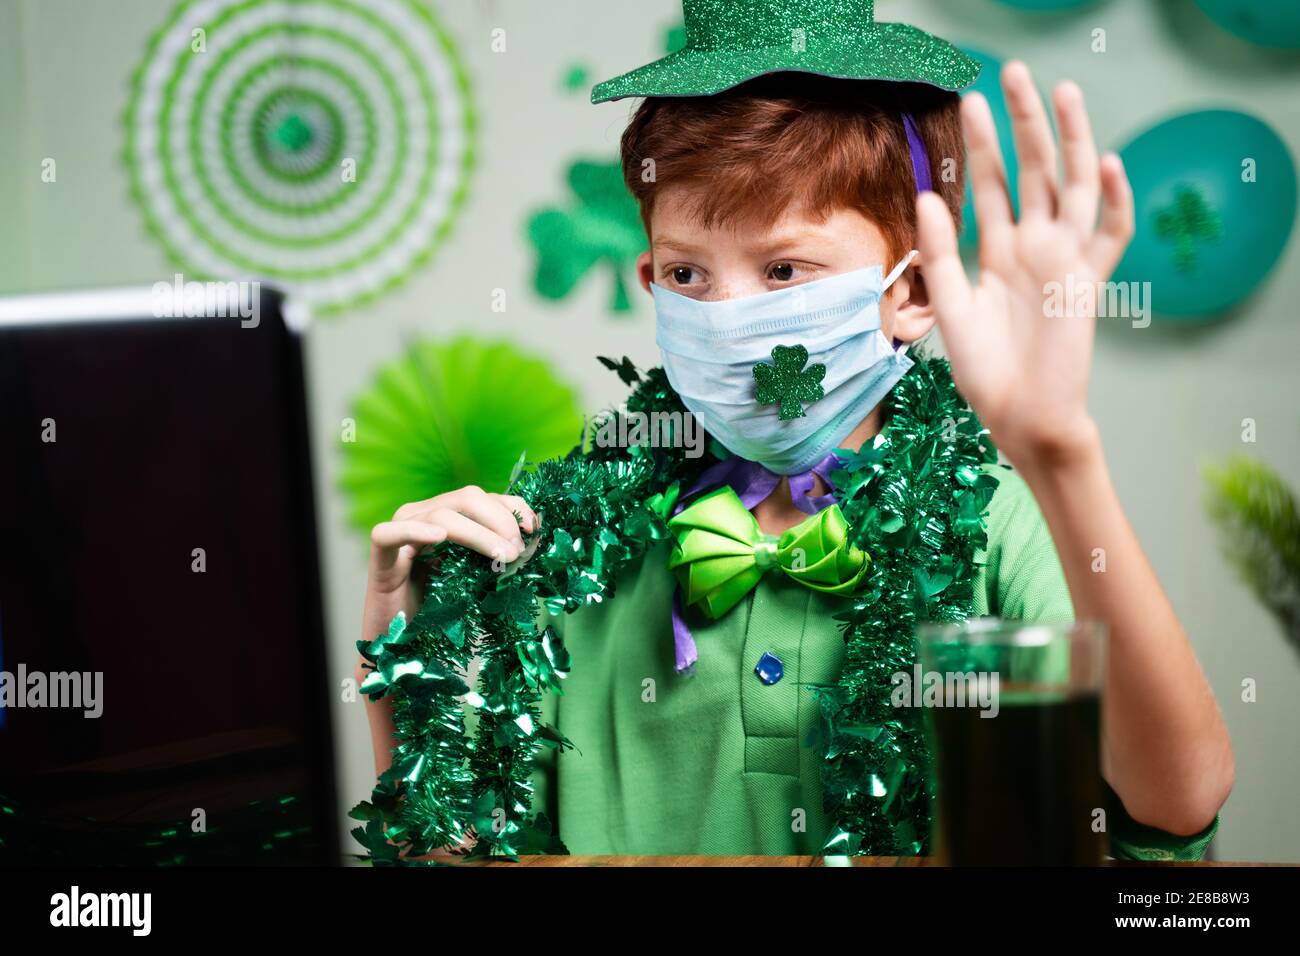 Bambino giovane con maschera facciale occupato in videochiamata su Laptop - concetto di San Patrizio lontano giorno celebrazione due a coronavirus o covid-19 pandemia Foto Stock